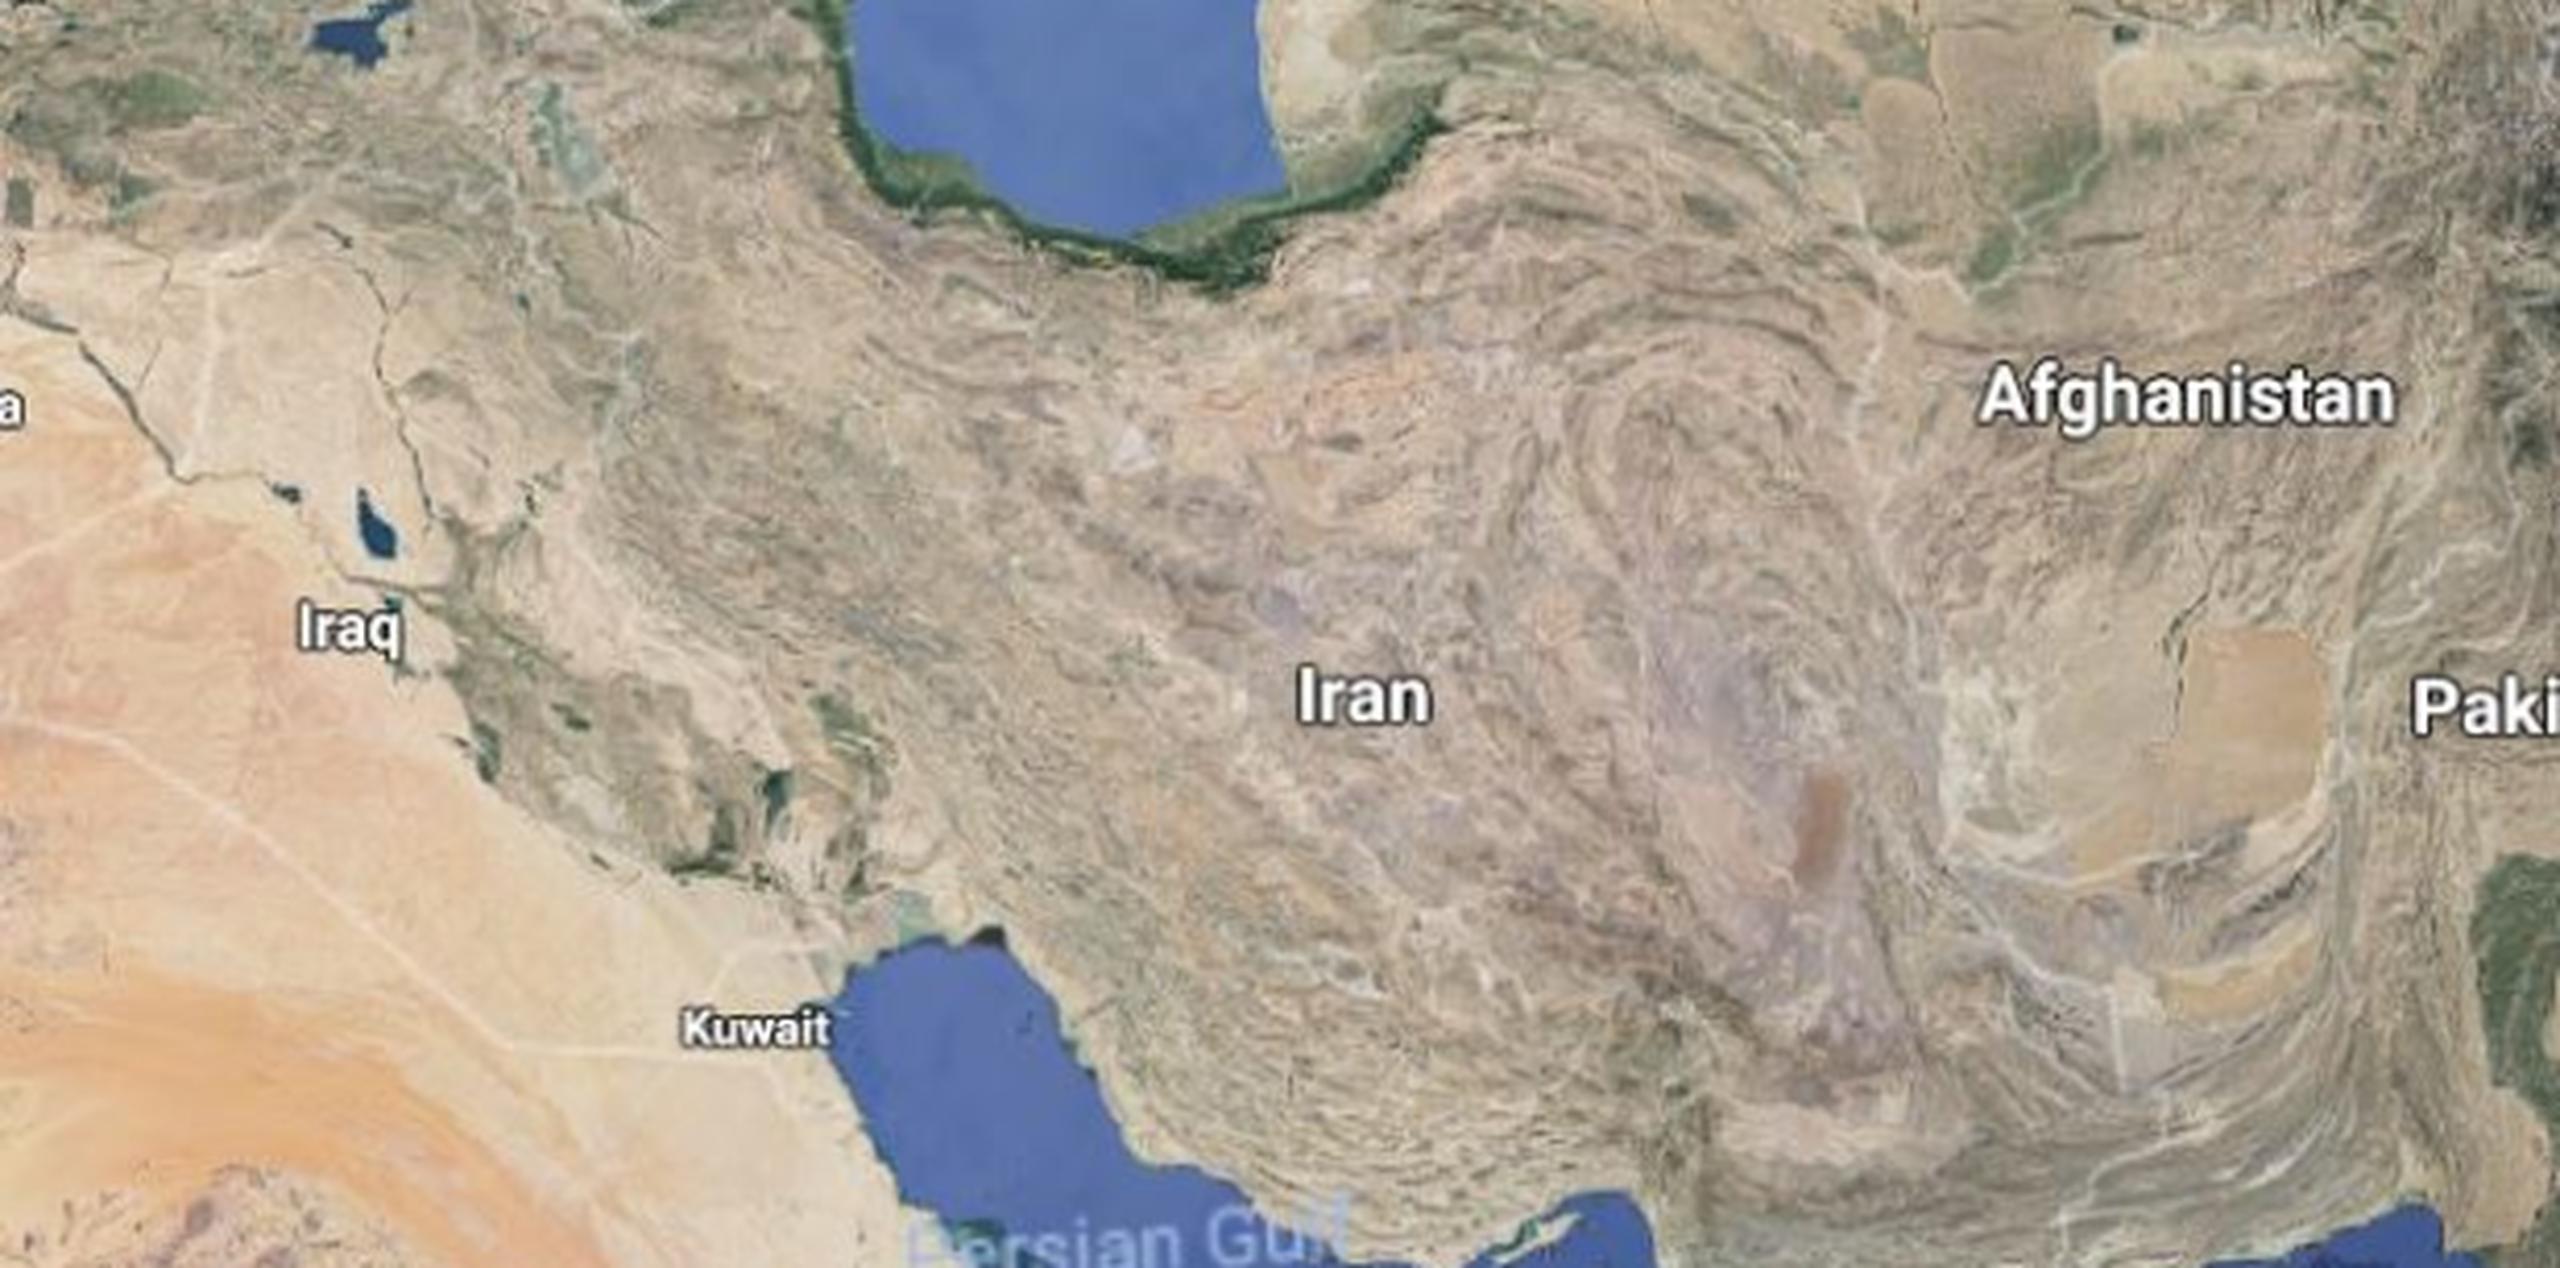 El ATR chocó contra una montaña llamada Dena, de la cordillera Zagros, cerca de la localidad de Samirom, en el sur de la provincia central de Isfahán. (Google)